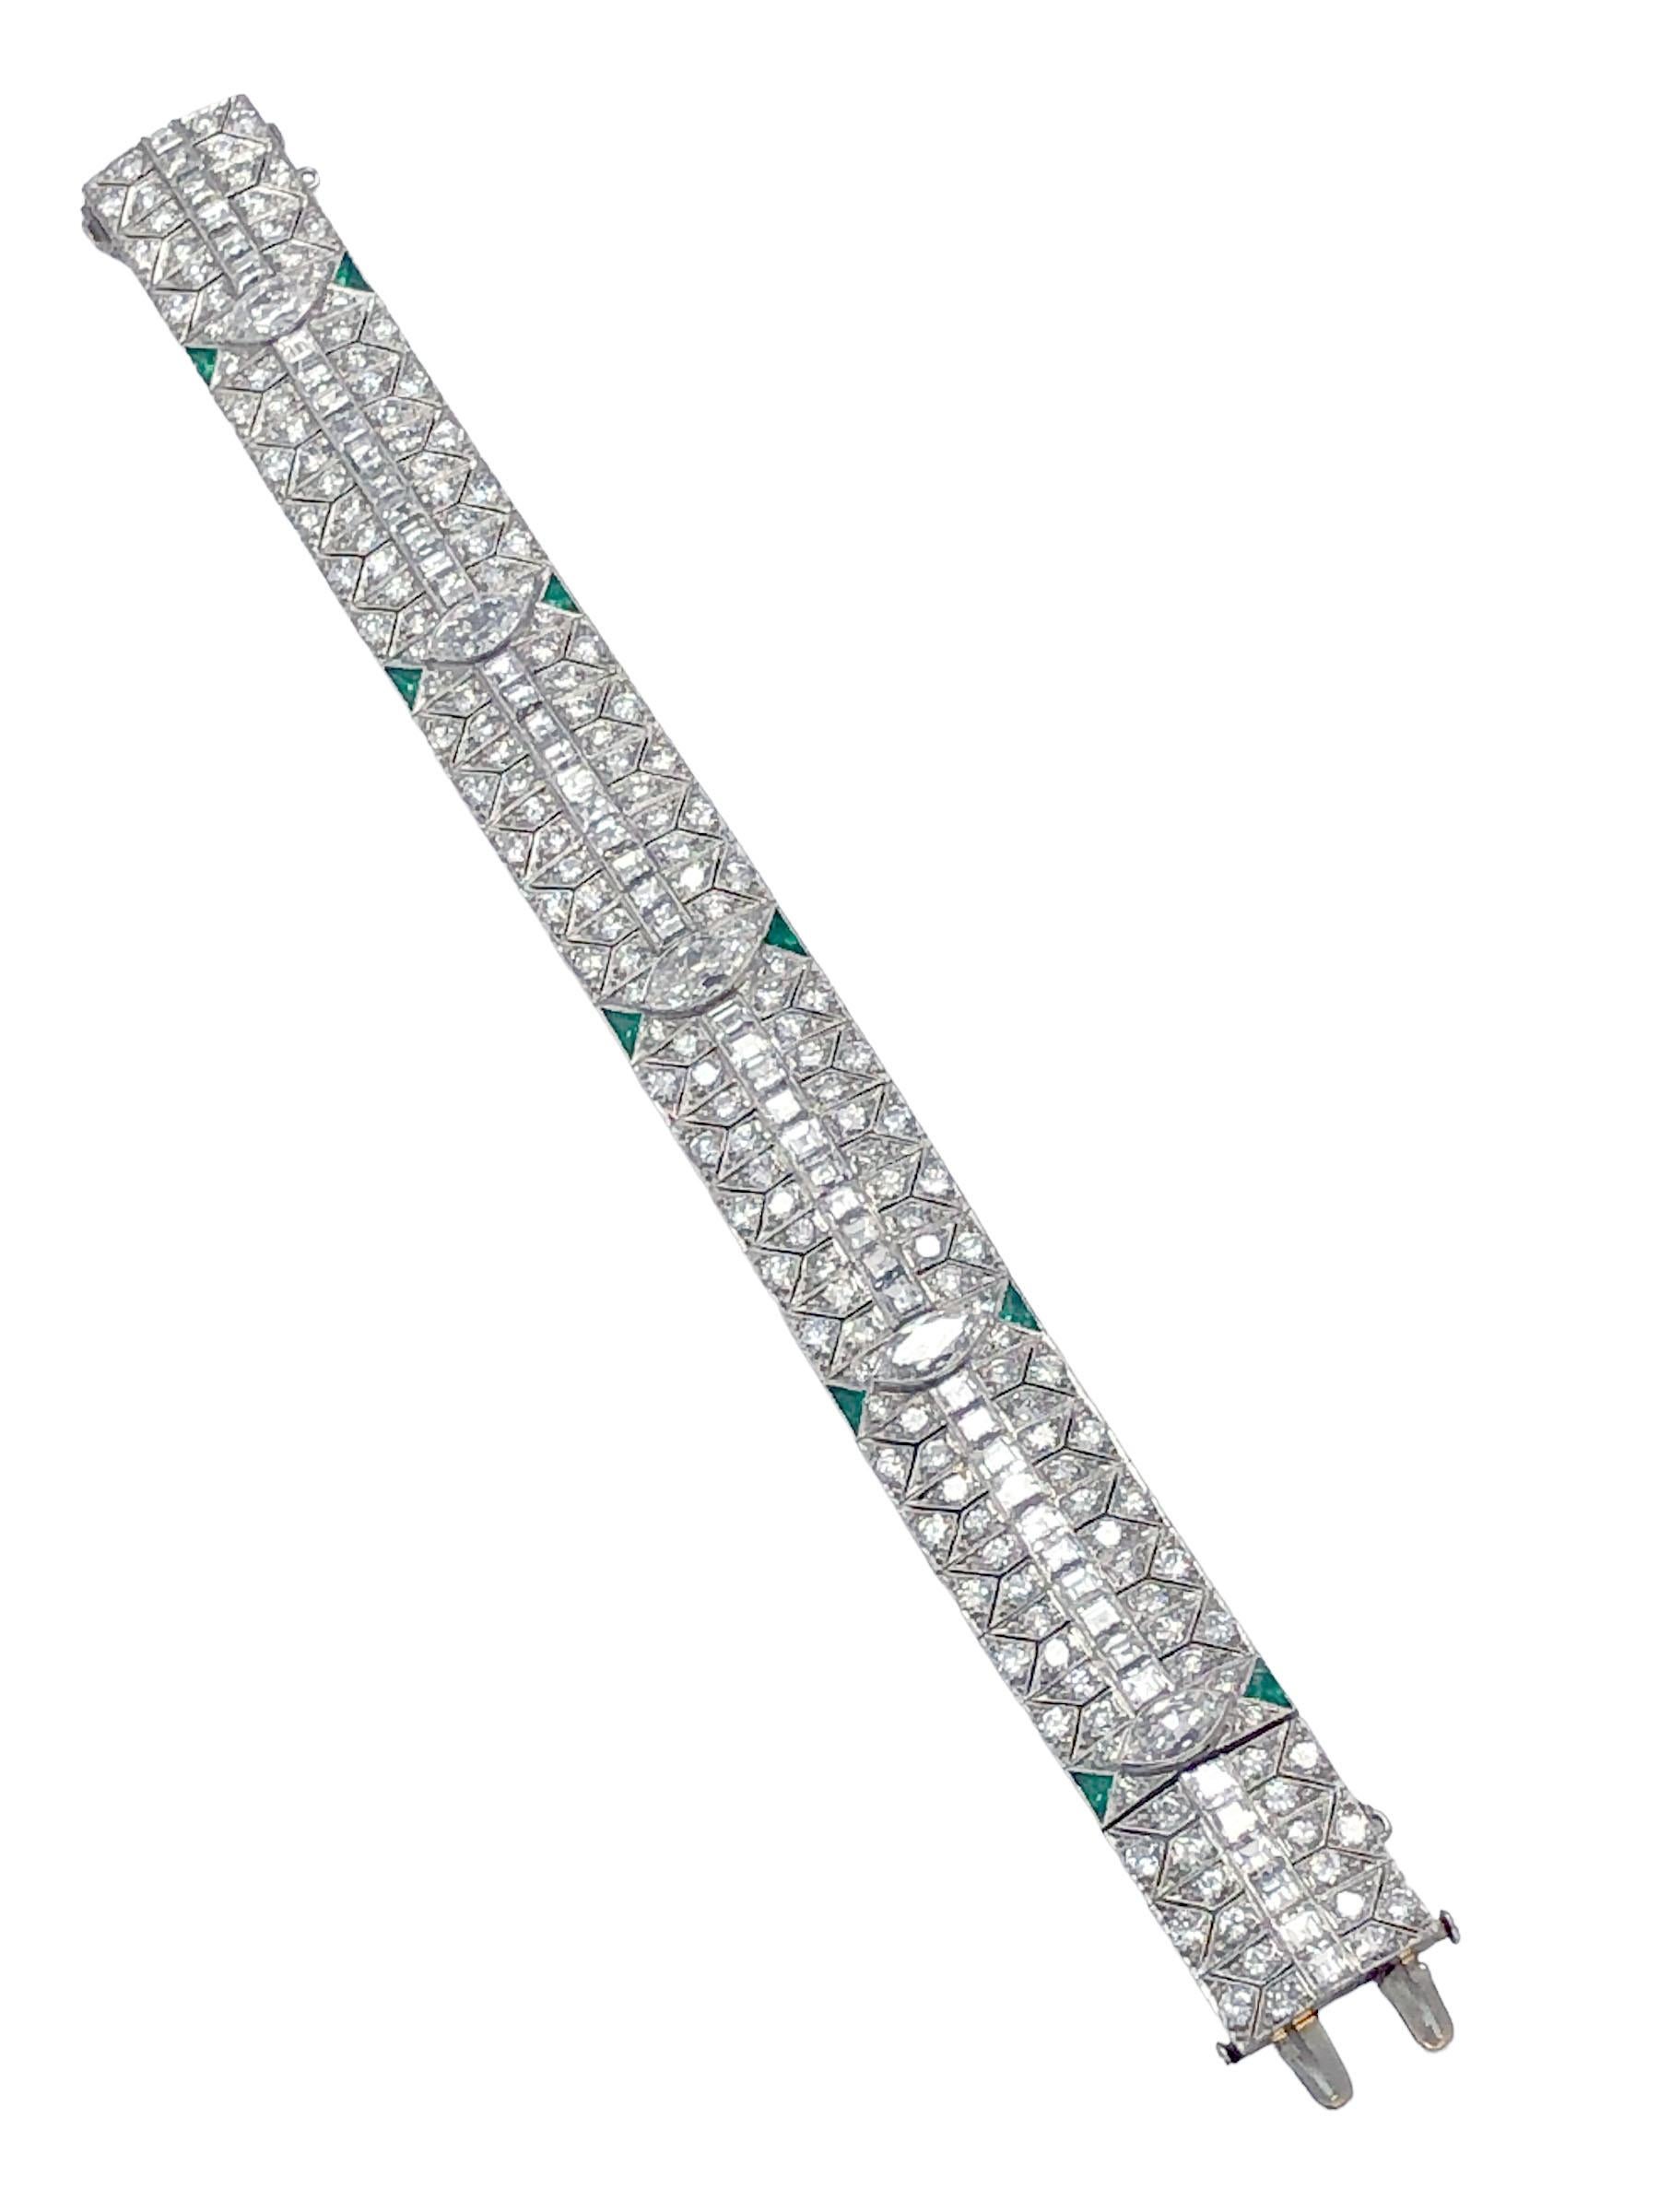 Bracelet en platine des années 1930, de style Art déco, mesurant 7 pouces de long et 5/8 pouces de large, serti de diamants de forme marquise, le plus grand faisant environ 1 carat et les autres environ 3/4 carat chacun, d'une rangée centrale de